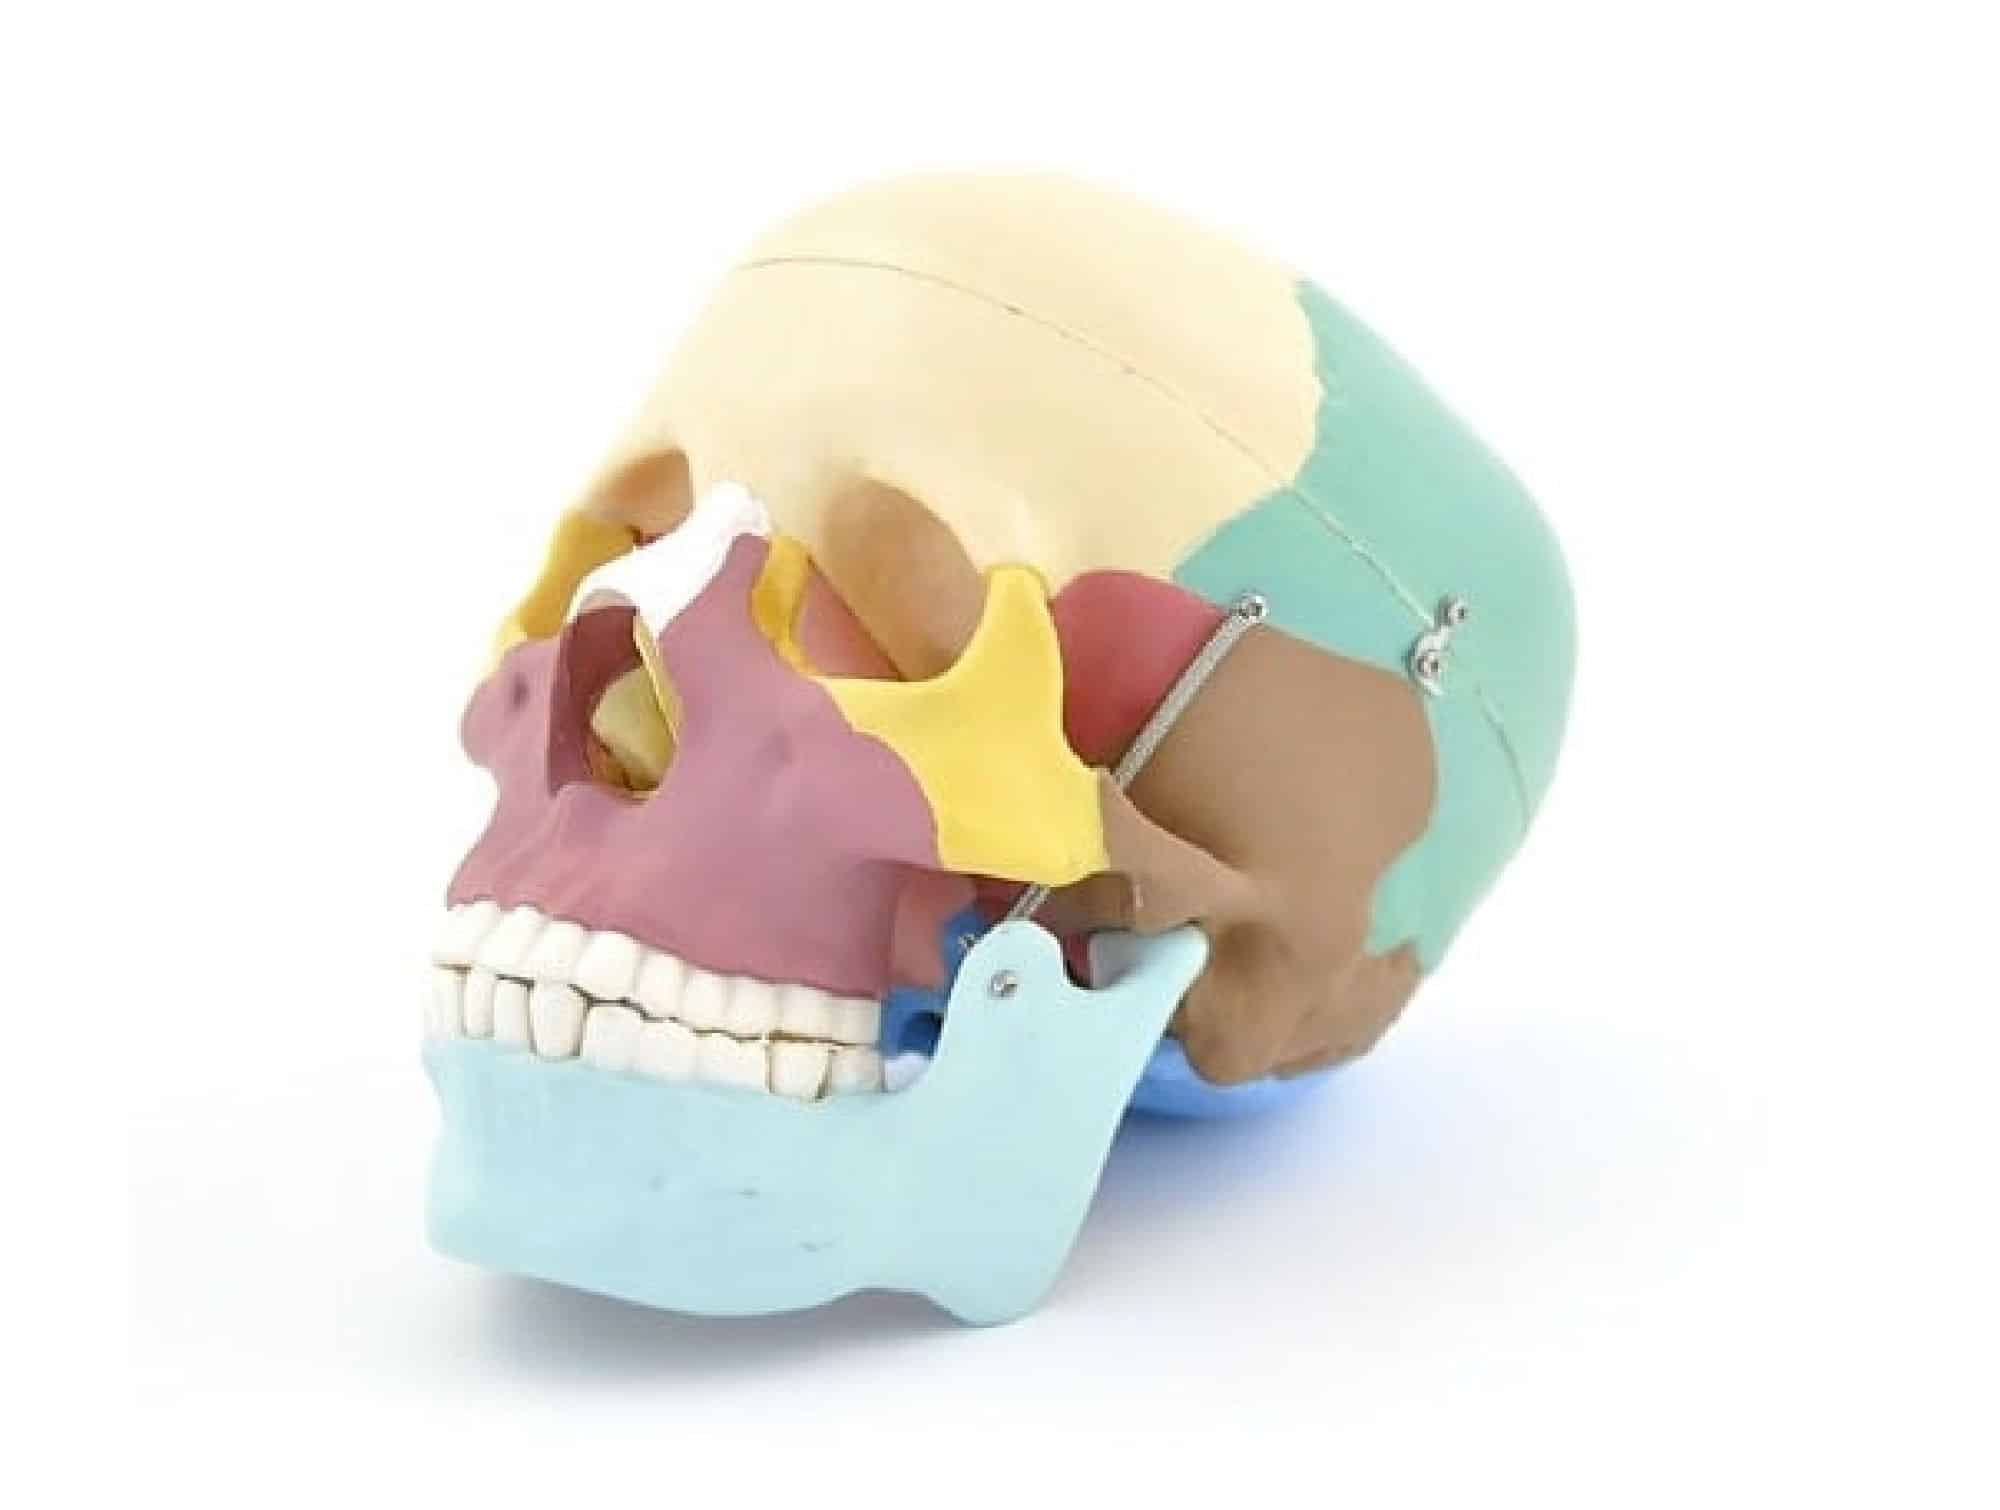 Planches anatomiques Le crâne humain